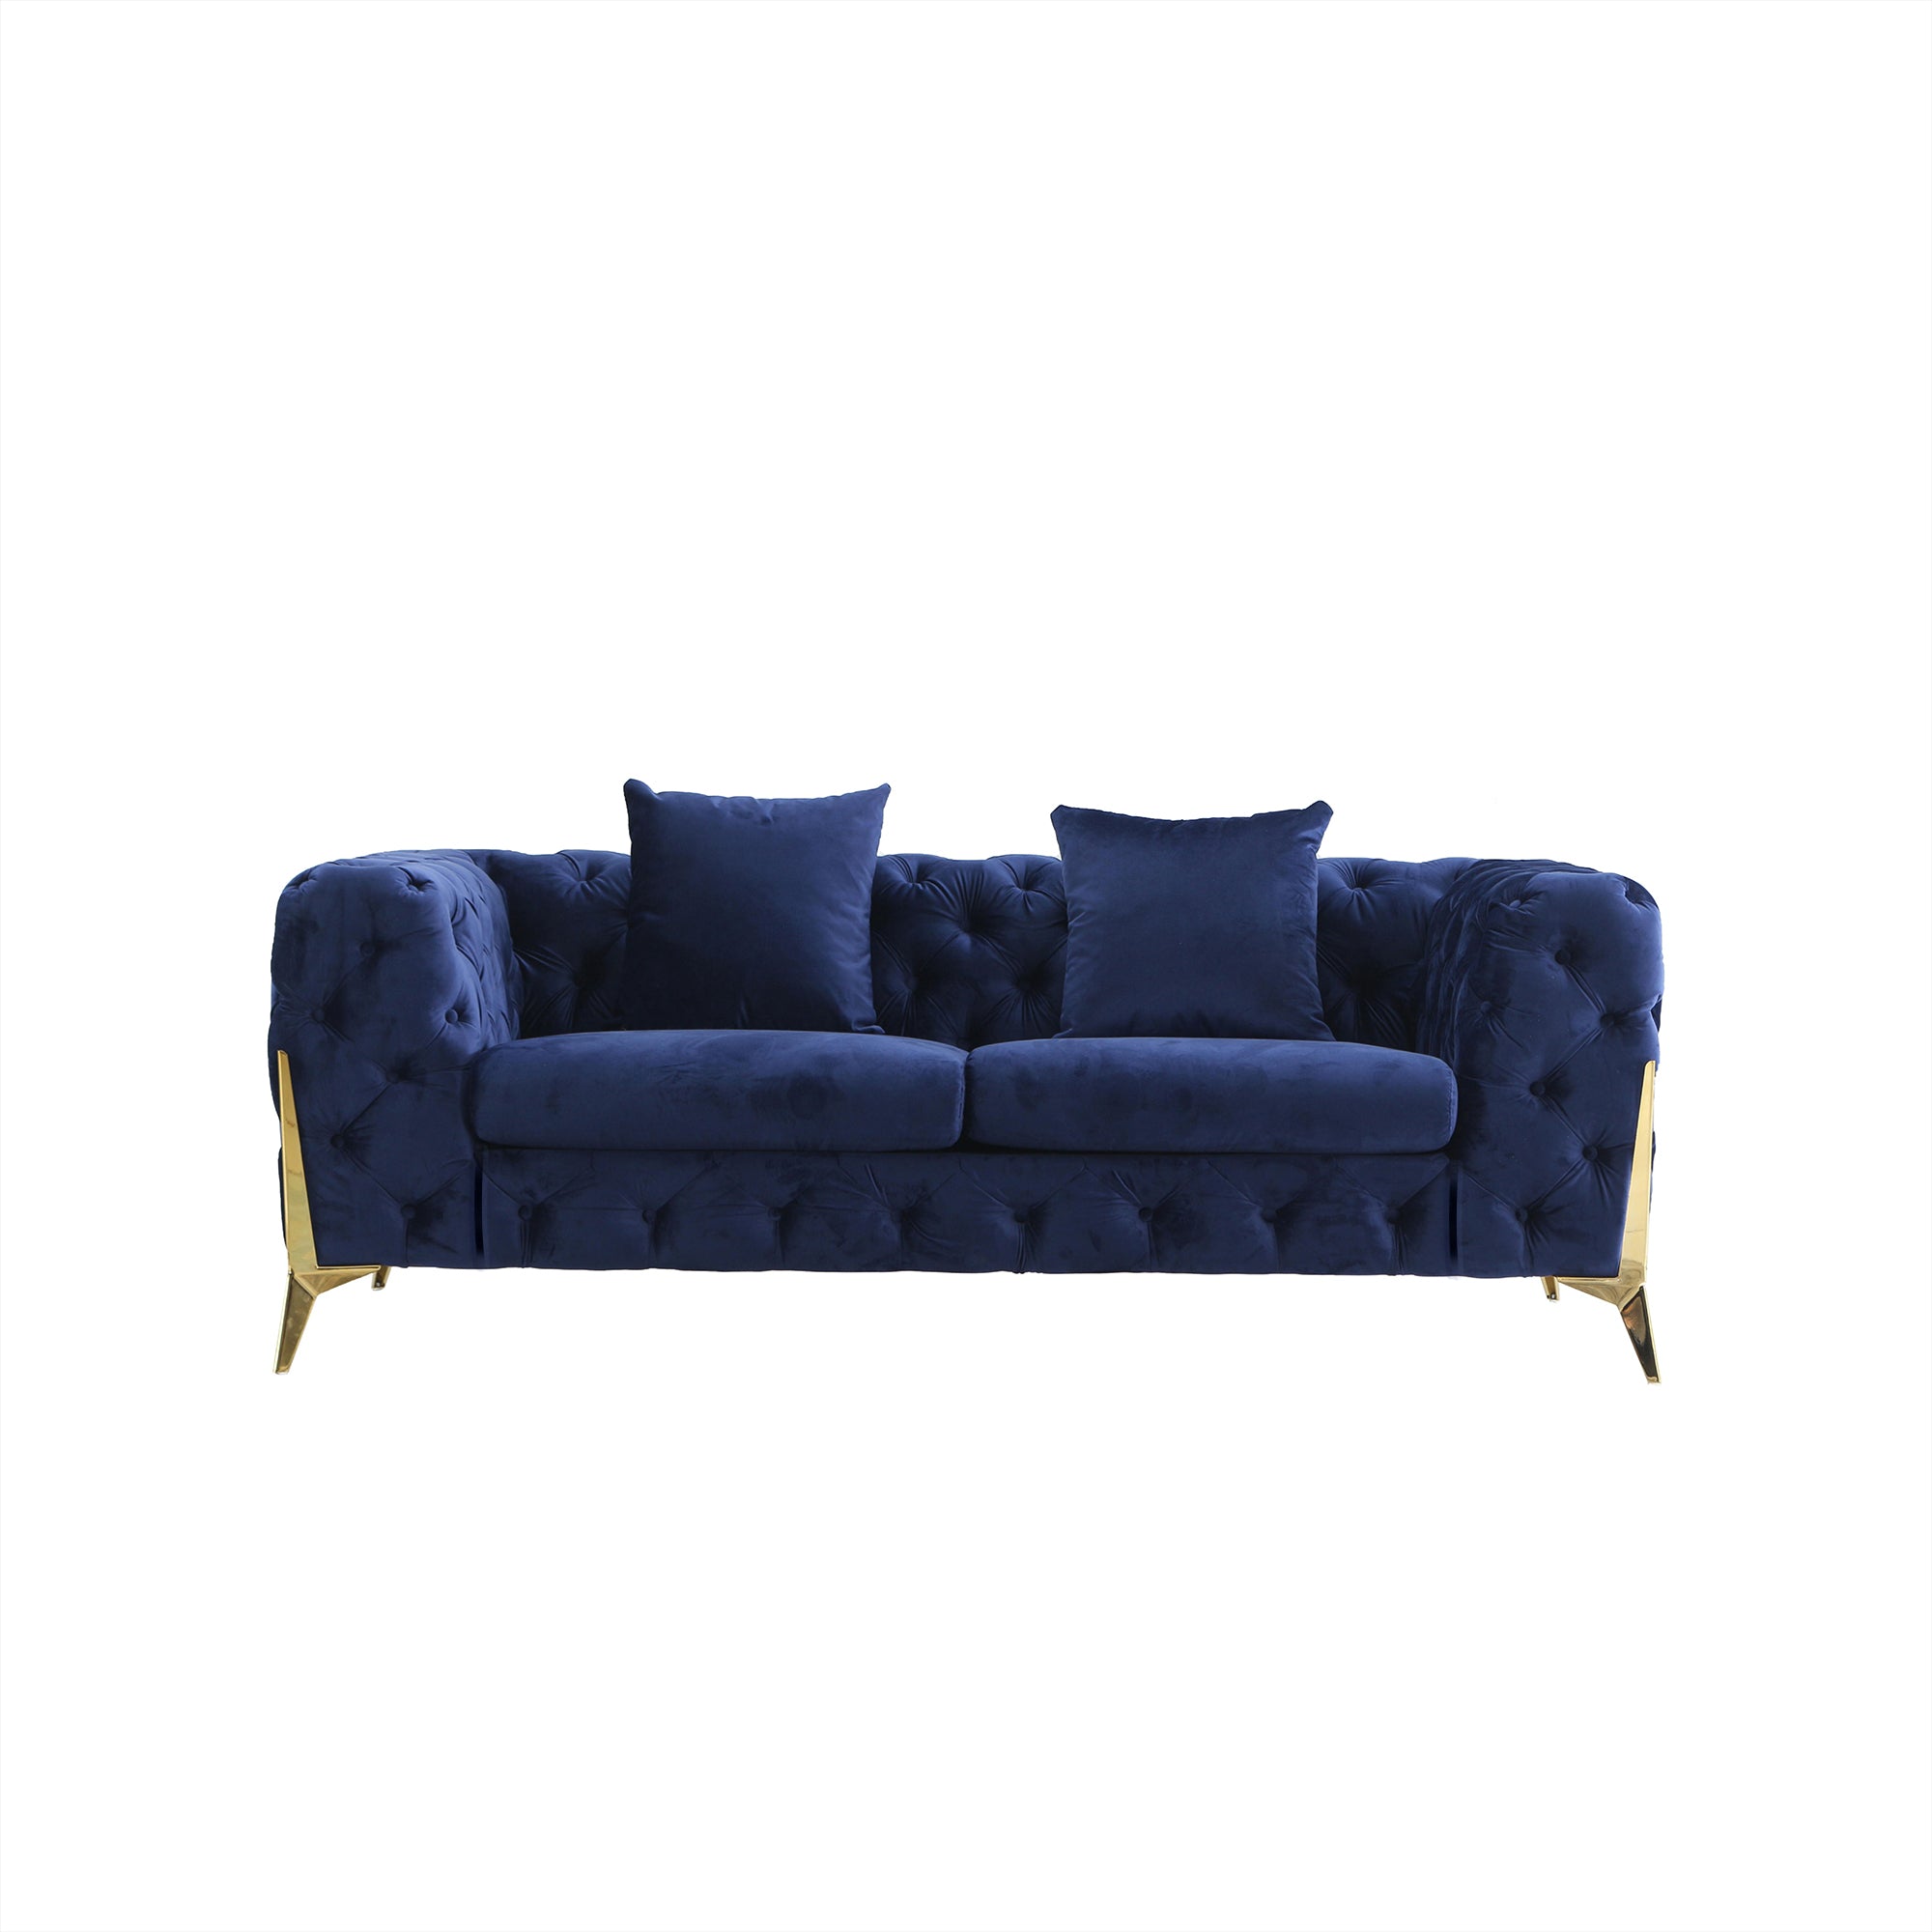 August Grove Sofa Blue